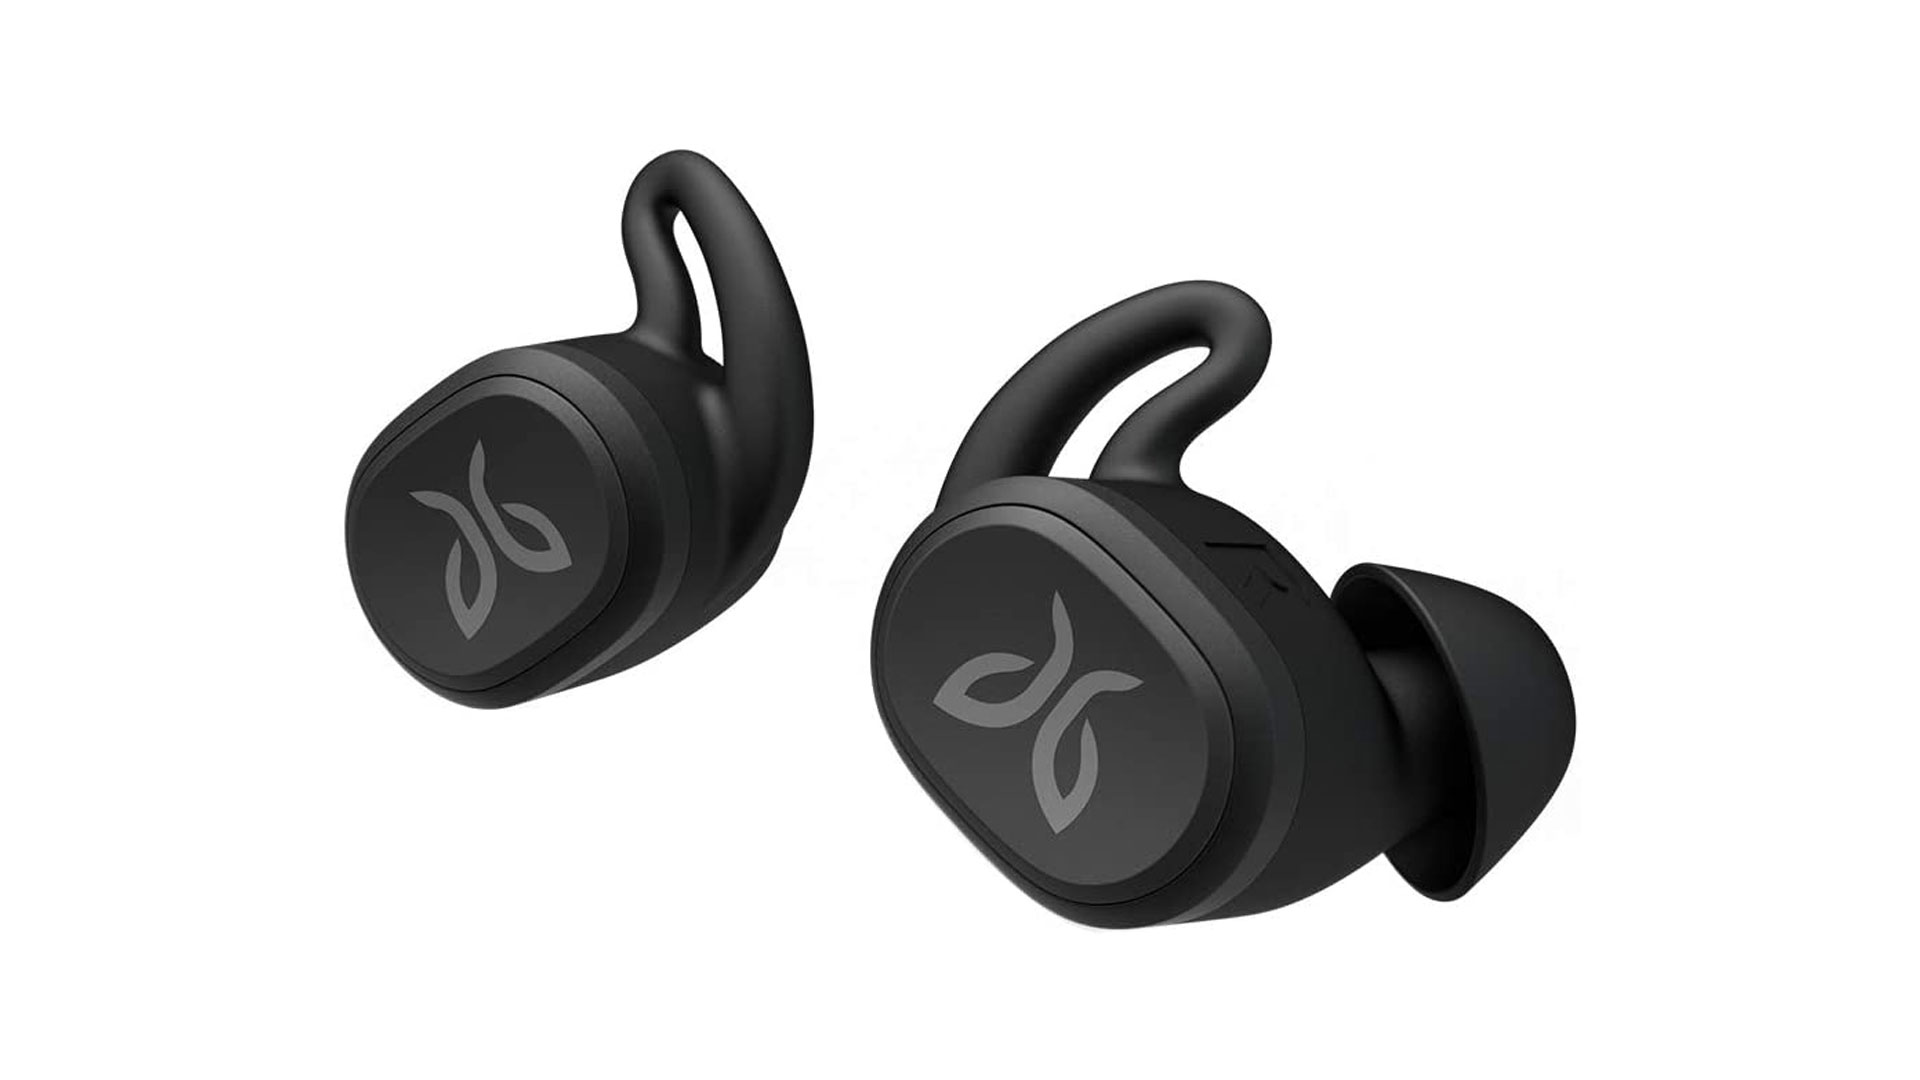 Best running headphones: Jaybird Vista ear buds